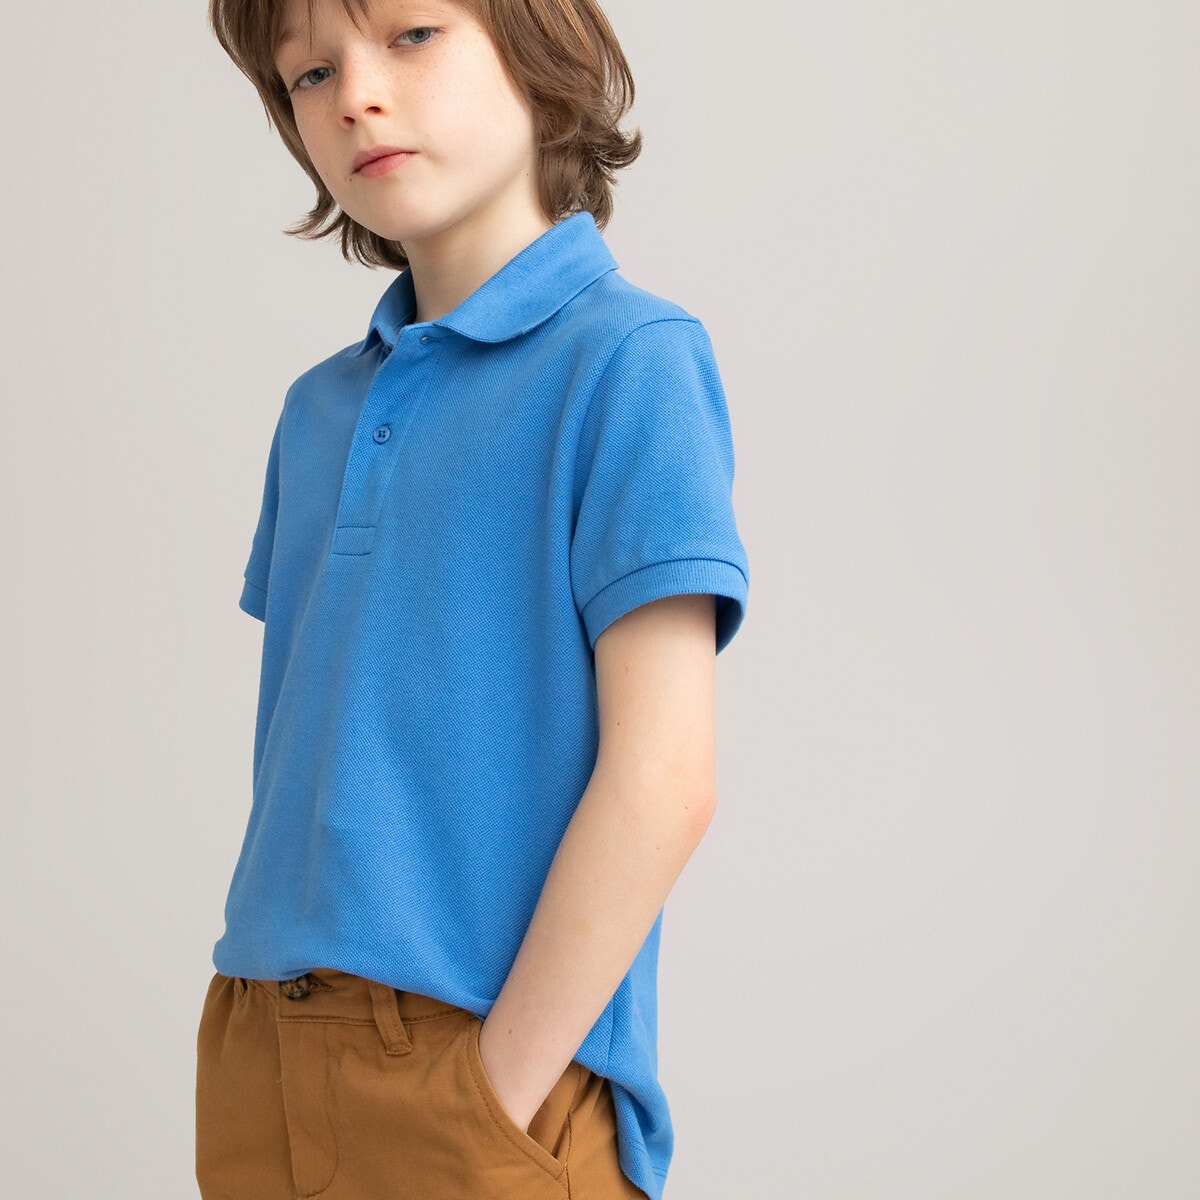 ΠΑΙΔΙ | Μπλούζες & Πουκάμισα | Polo Κοντομάνικο πικέ πόλο, 3-12 ετών